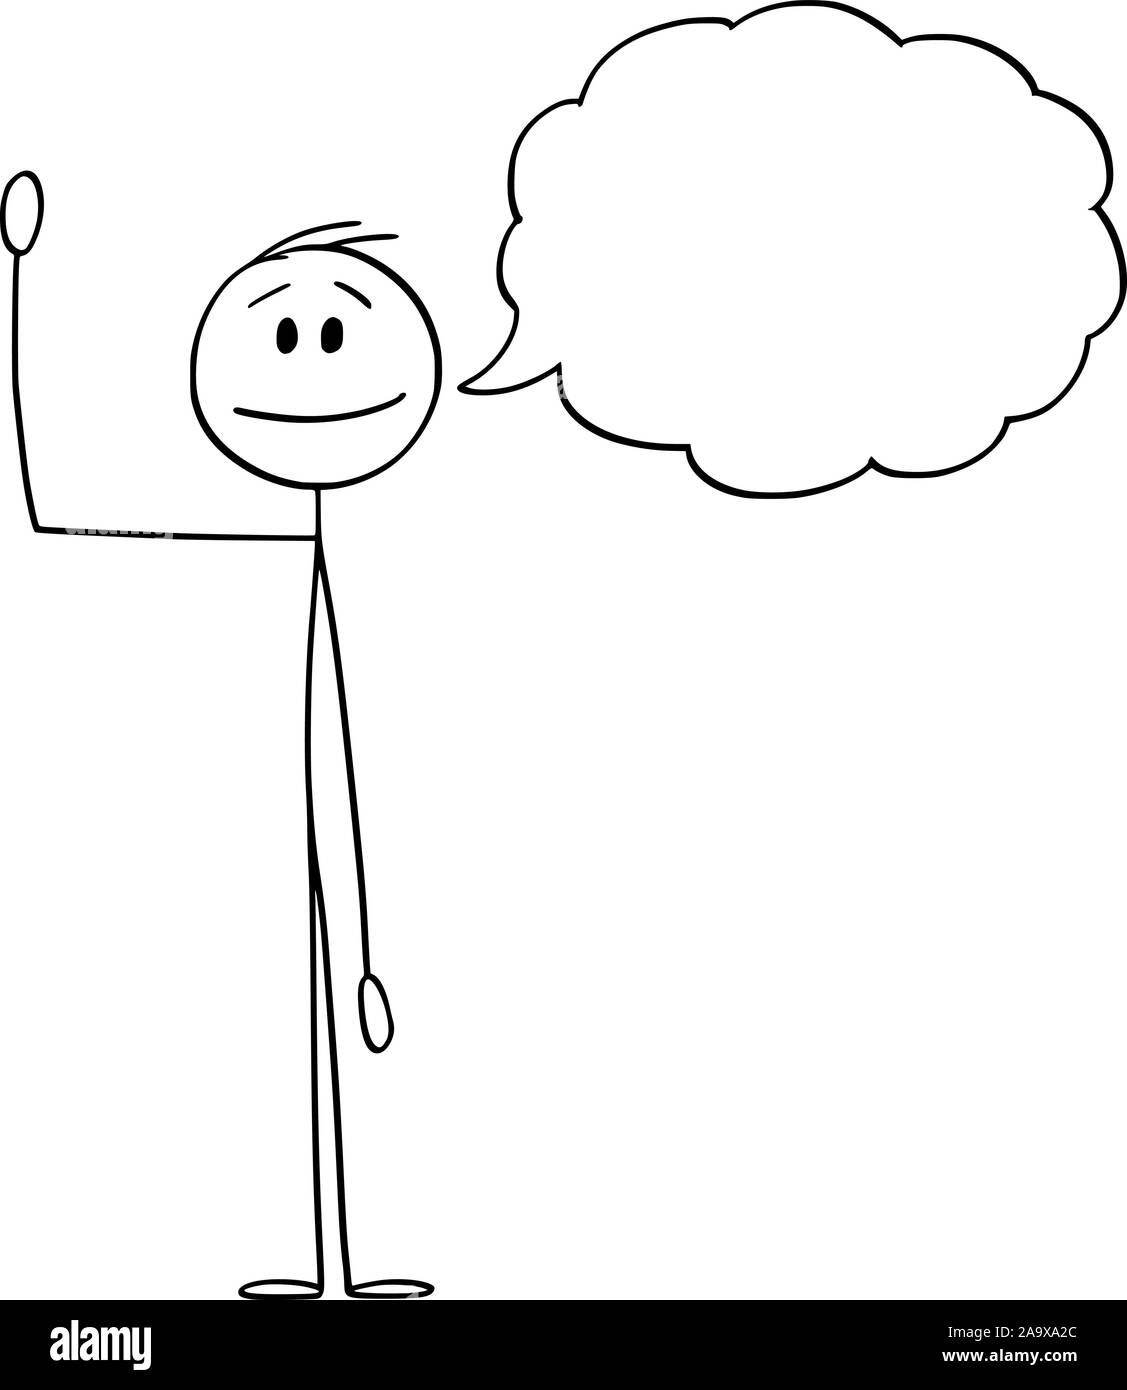 Vector cartoon stick figura disegno illustrazione concettuale dell'uomo o imprenditore agitando la mano e saluto con un testo vuoto bolla o palloncino del parlato per il tuo testo. Illustrazione Vettoriale